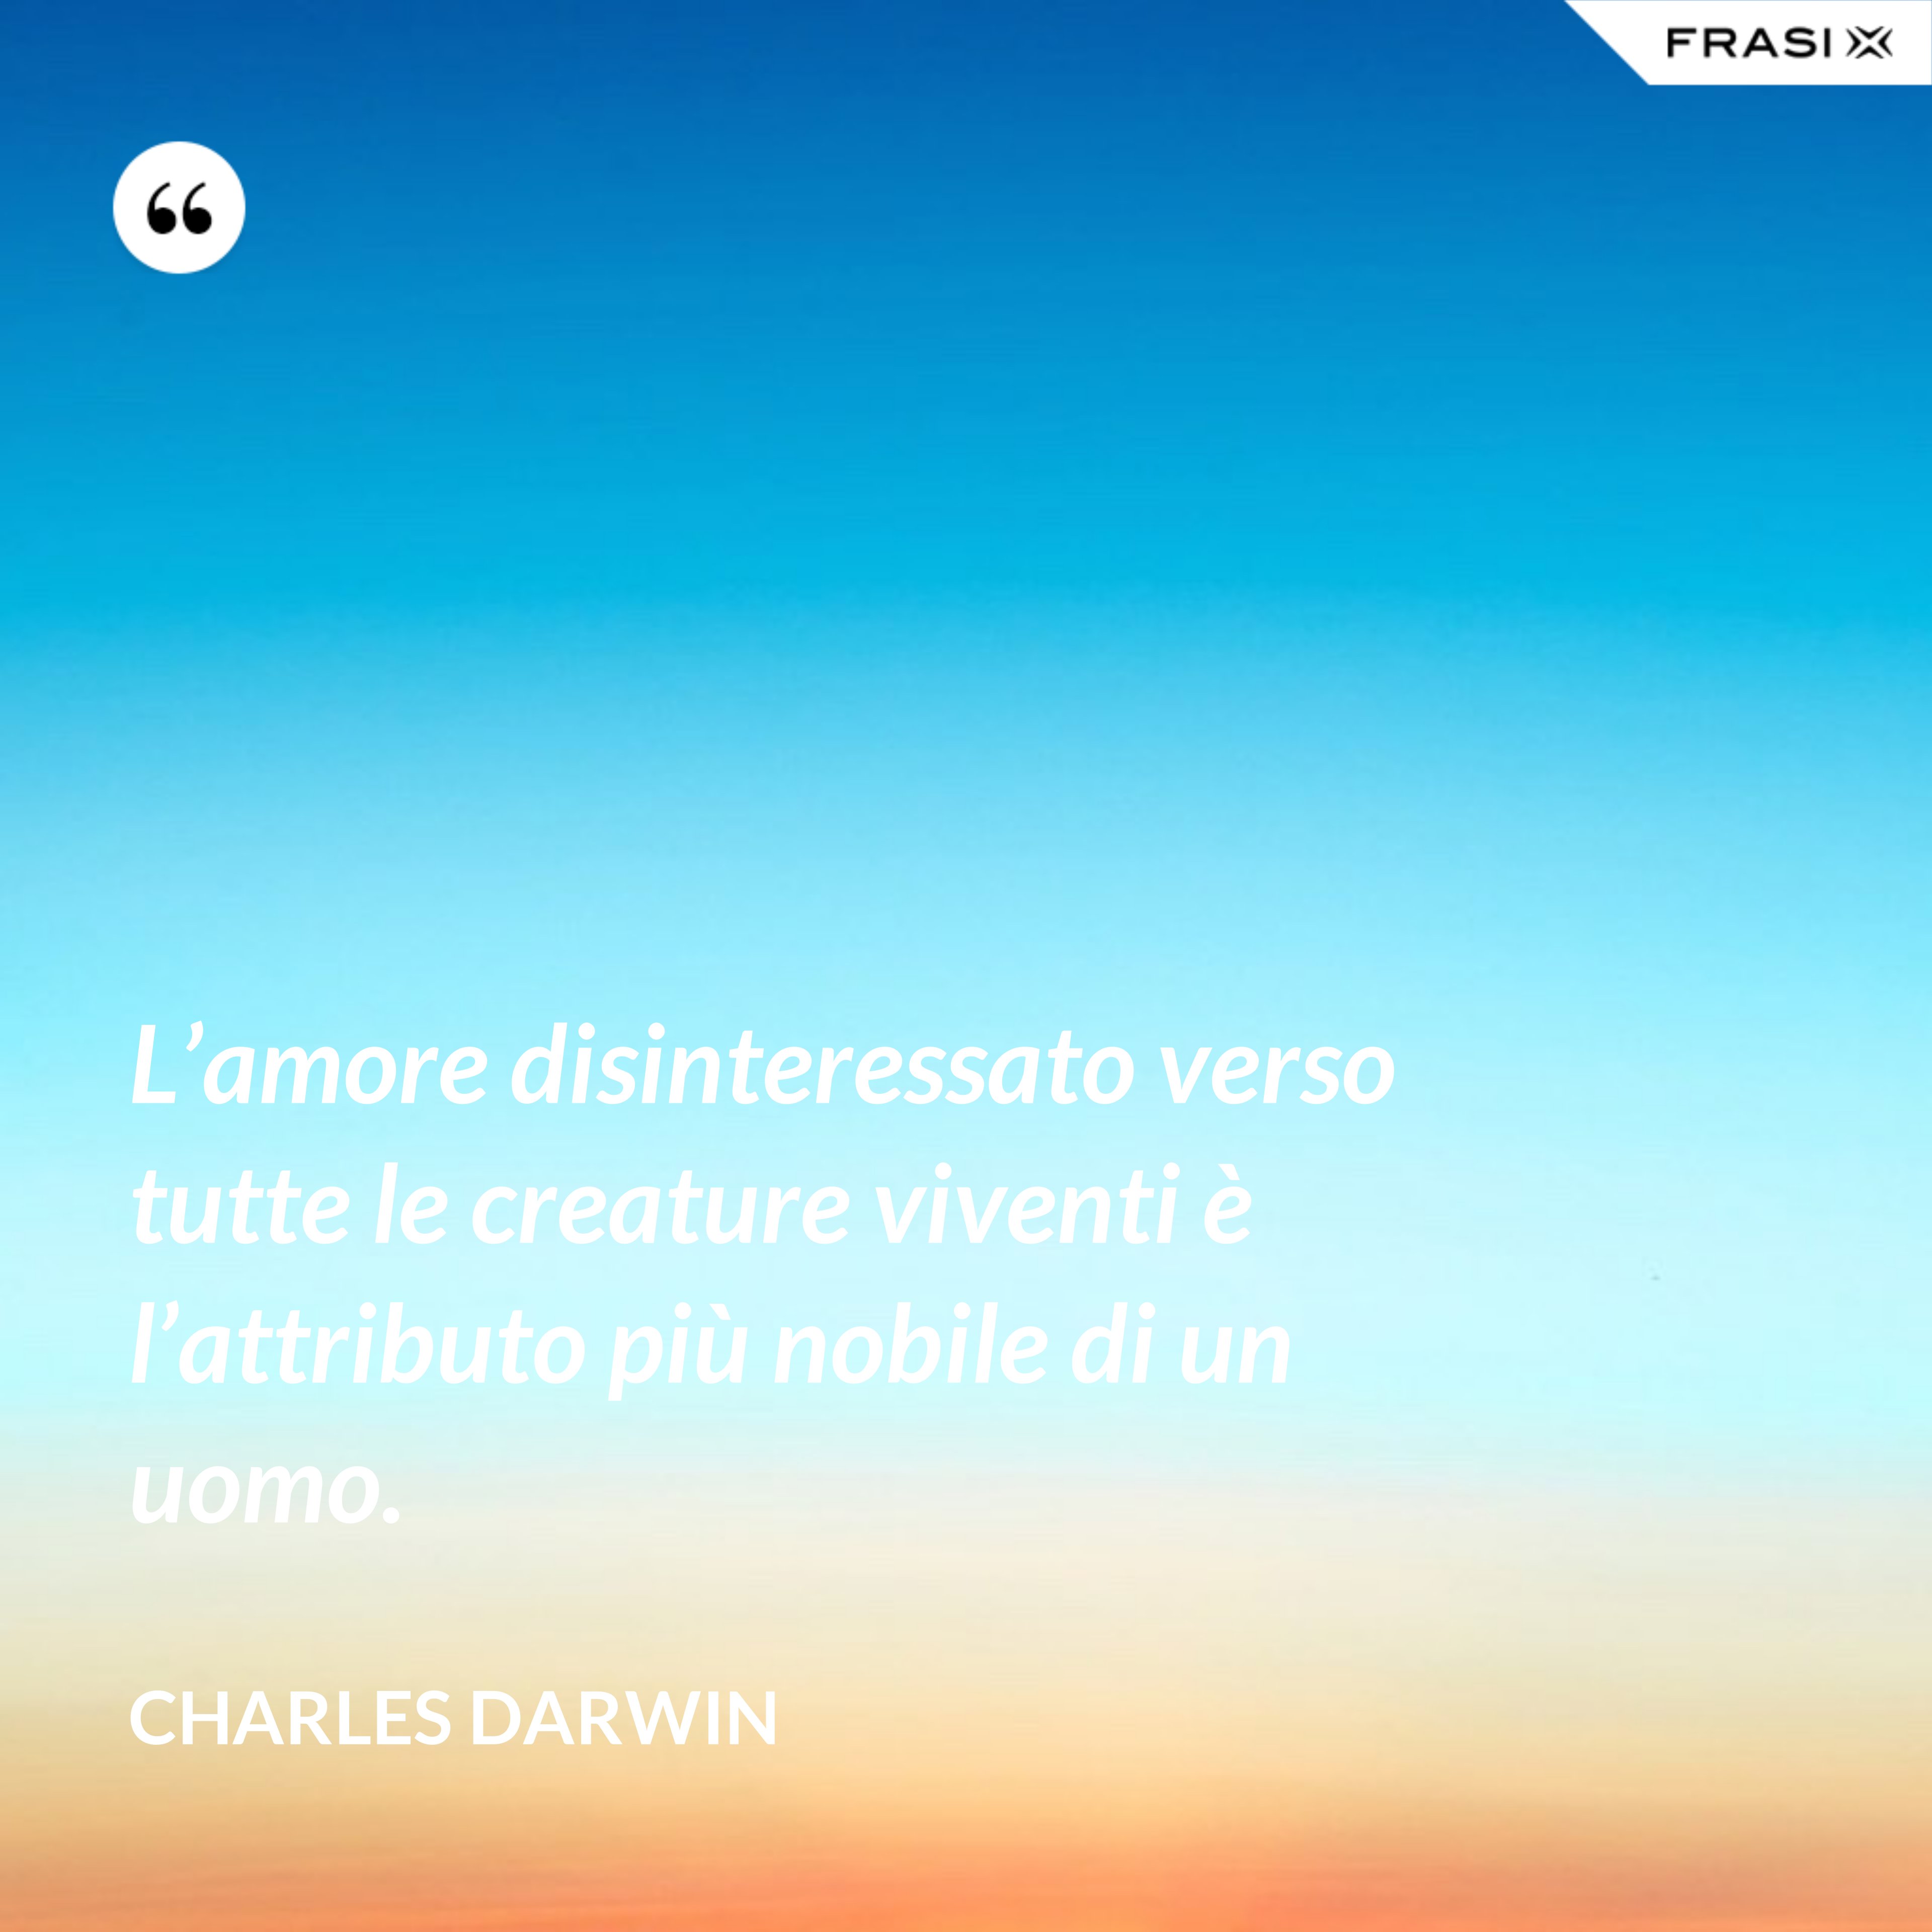 L’amore disinteressato verso tutte le creature viventi è l’attributo più nobile di un uomo. - Charles Darwin